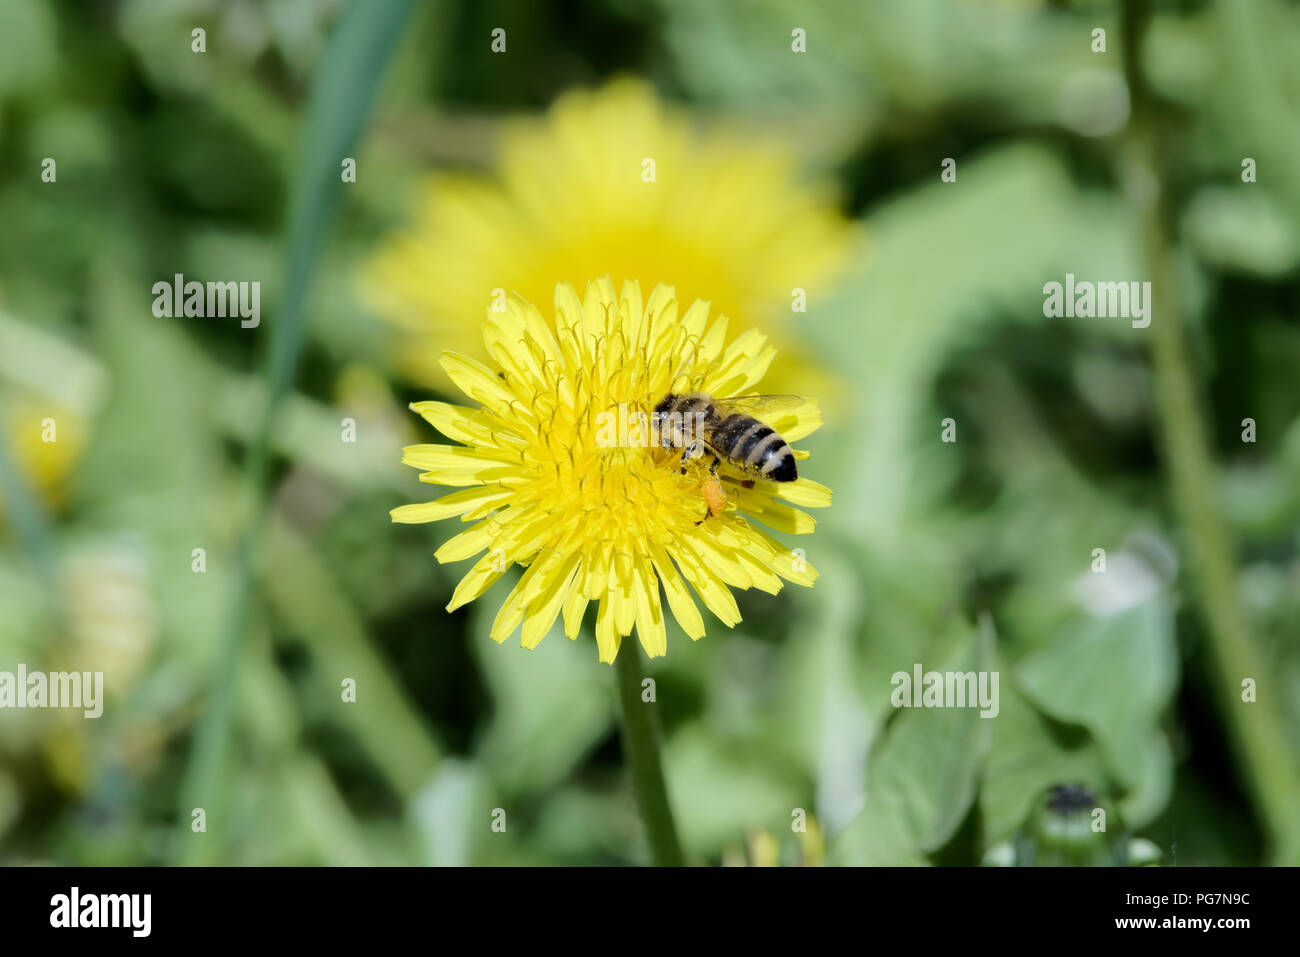 Gros plan du seul abeille sur pissenlit fleur jaune Banque D'Images